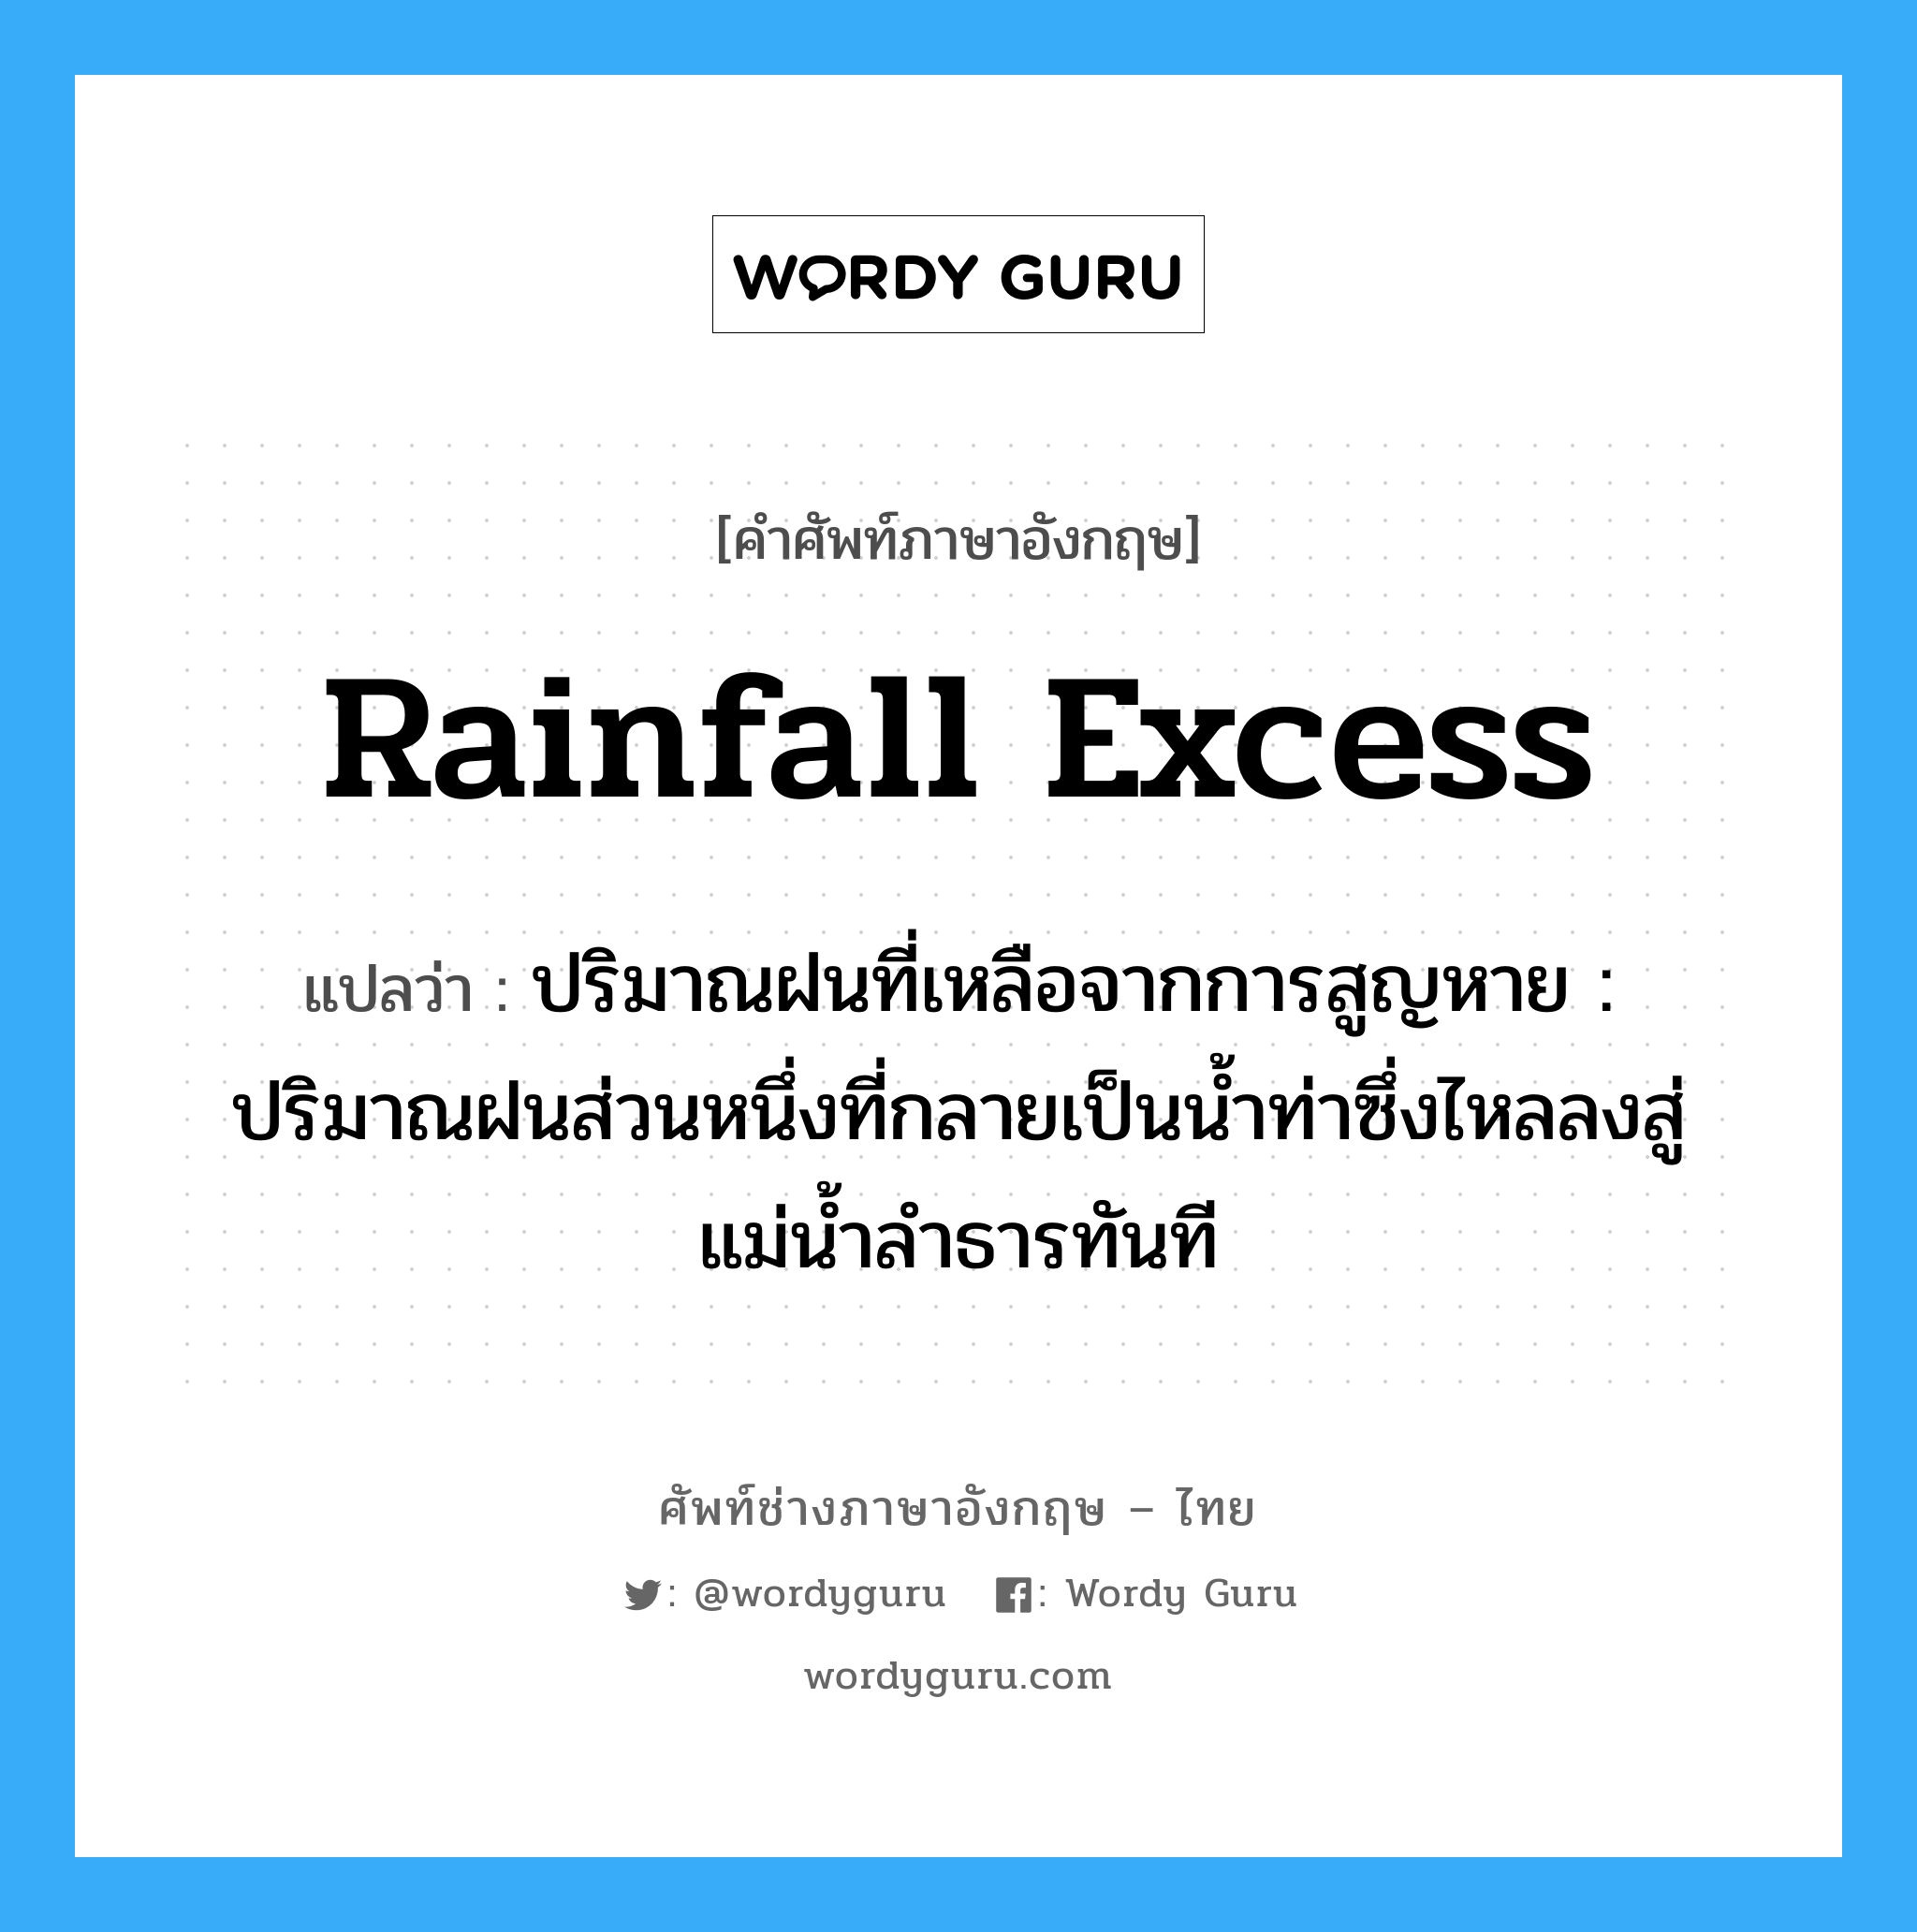 rainfall excess แปลว่า?, คำศัพท์ช่างภาษาอังกฤษ - ไทย rainfall excess คำศัพท์ภาษาอังกฤษ rainfall excess แปลว่า ปริมาณฝนที่เหลือจากการสูญหาย : ปริมาณฝนส่วนหนึ่งที่กลายเป็นน้ำท่าซึ่งไหลลงสู่แม่น้ำลำธารทันที